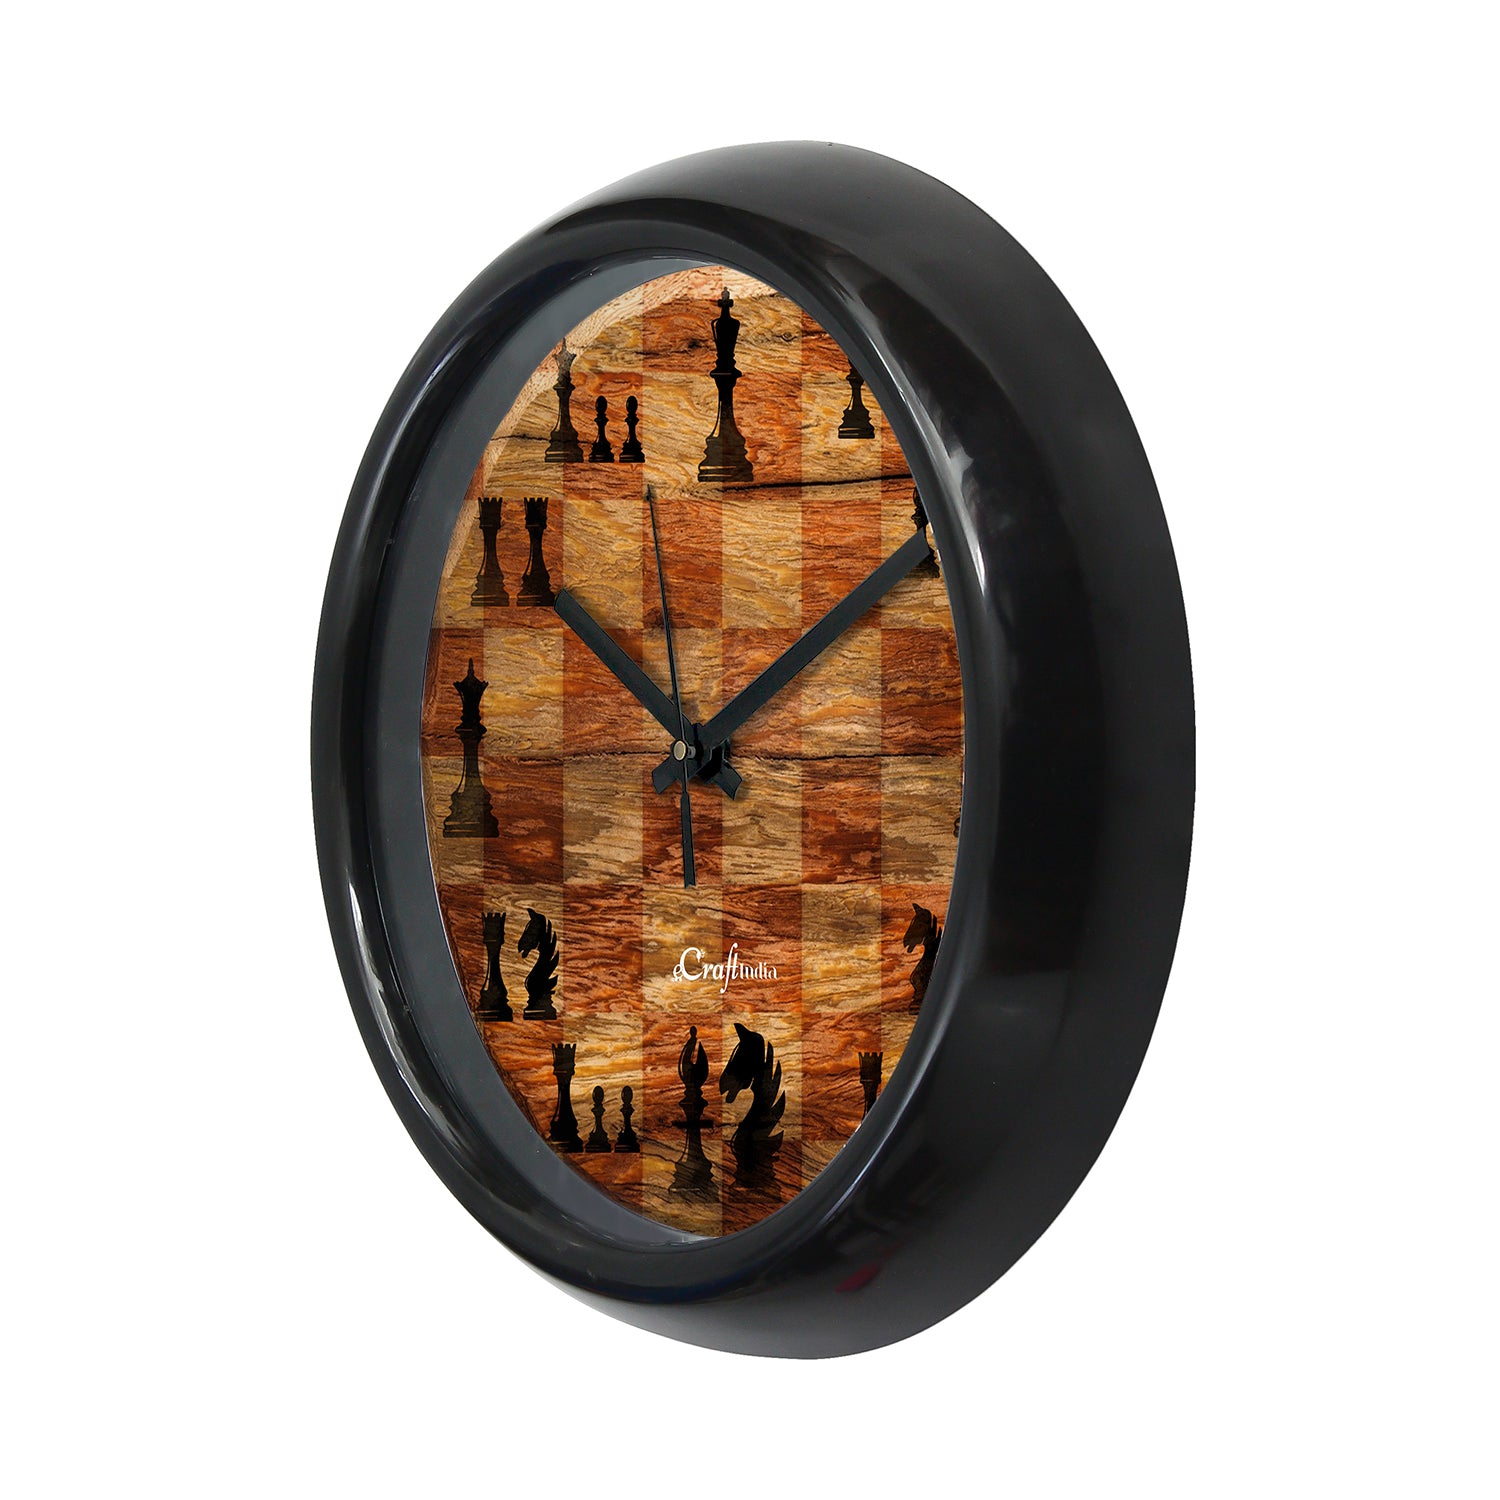 Chess Game Theme Round Shape Analog Designer Wall Clock 4